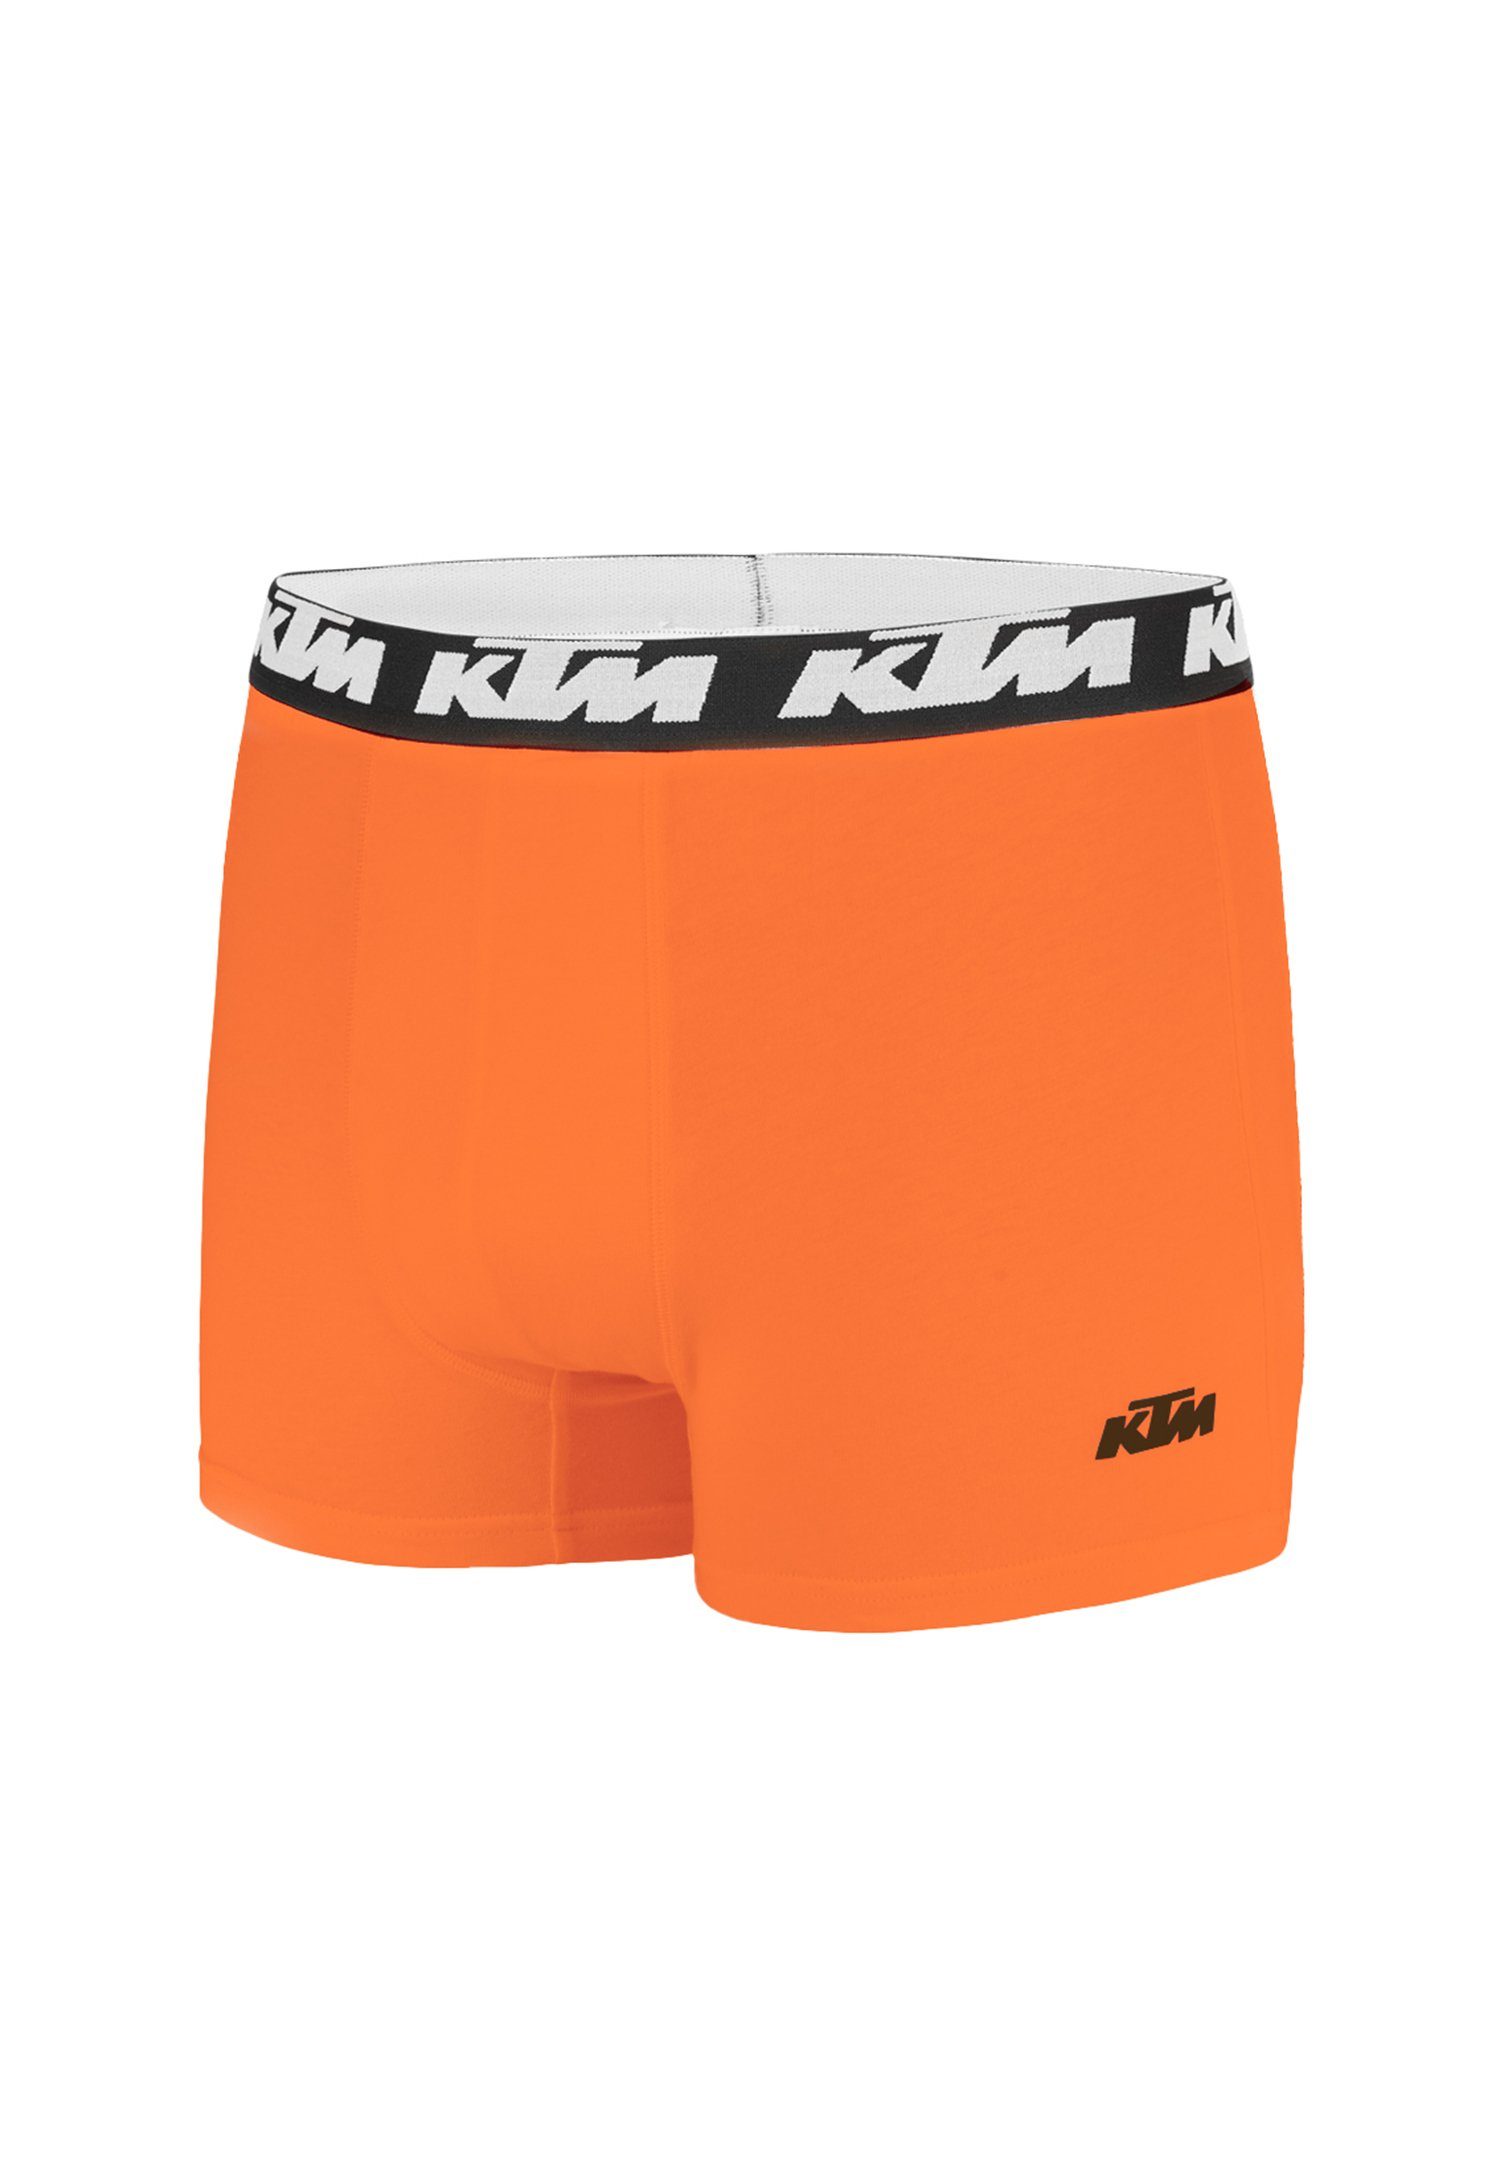 / Grey (2-St) KTM Cotton Pack Orange Light X2 Man Boxershorts Boxer